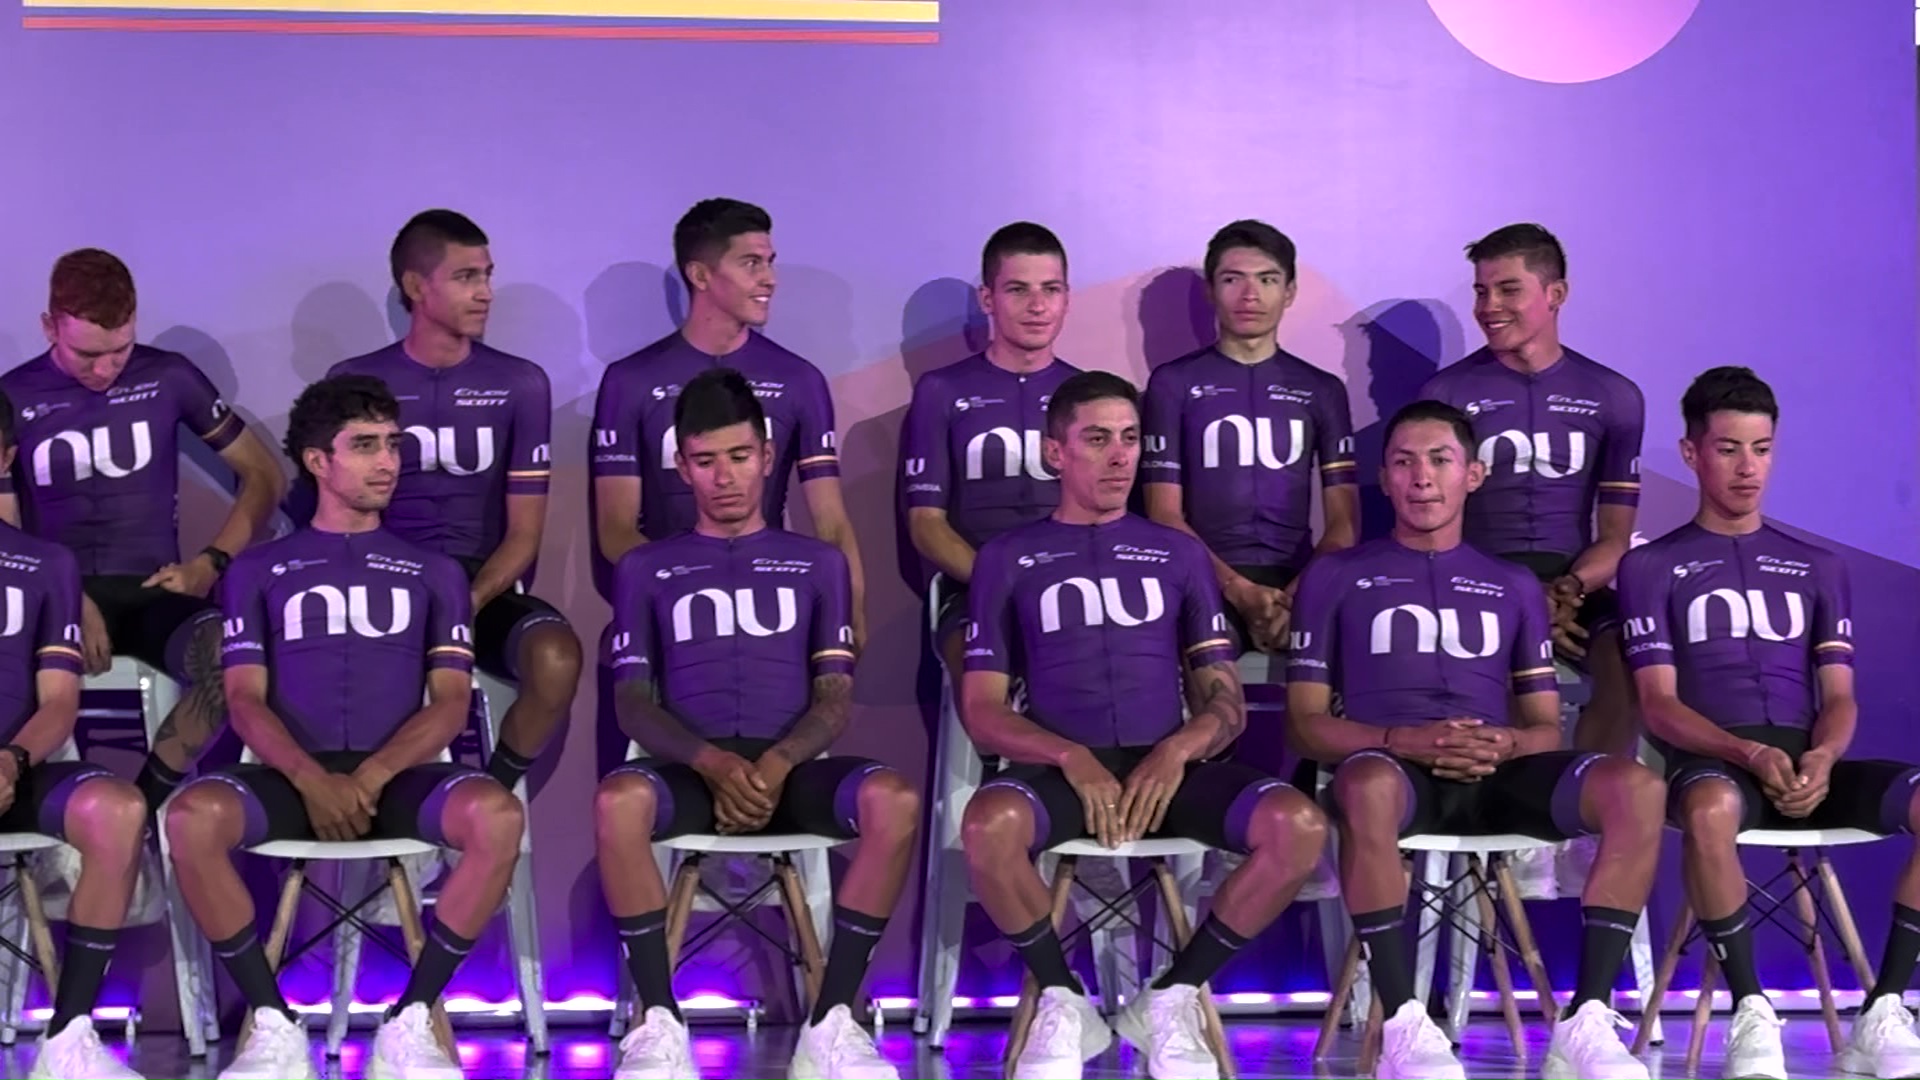 Presentado el equipo de ciclismo Nu Colombia